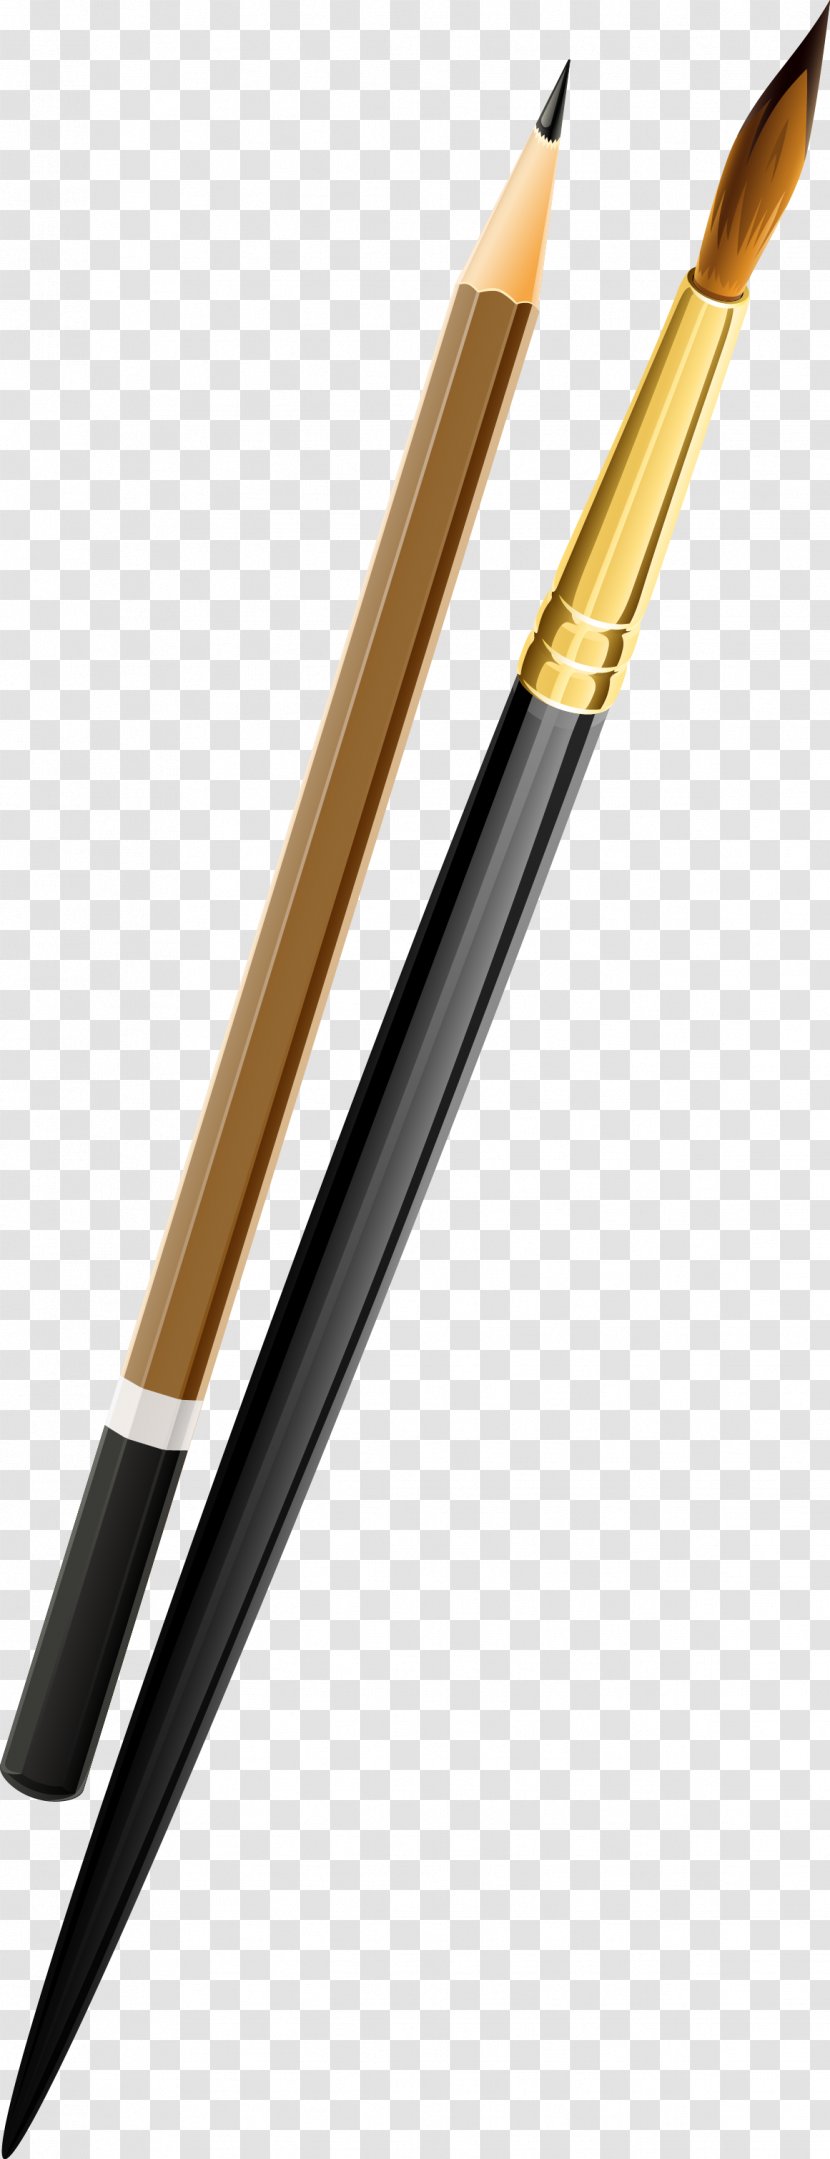 Paintbrush Palette Painter Pencil - Silhouette - Pensil Transparent PNG